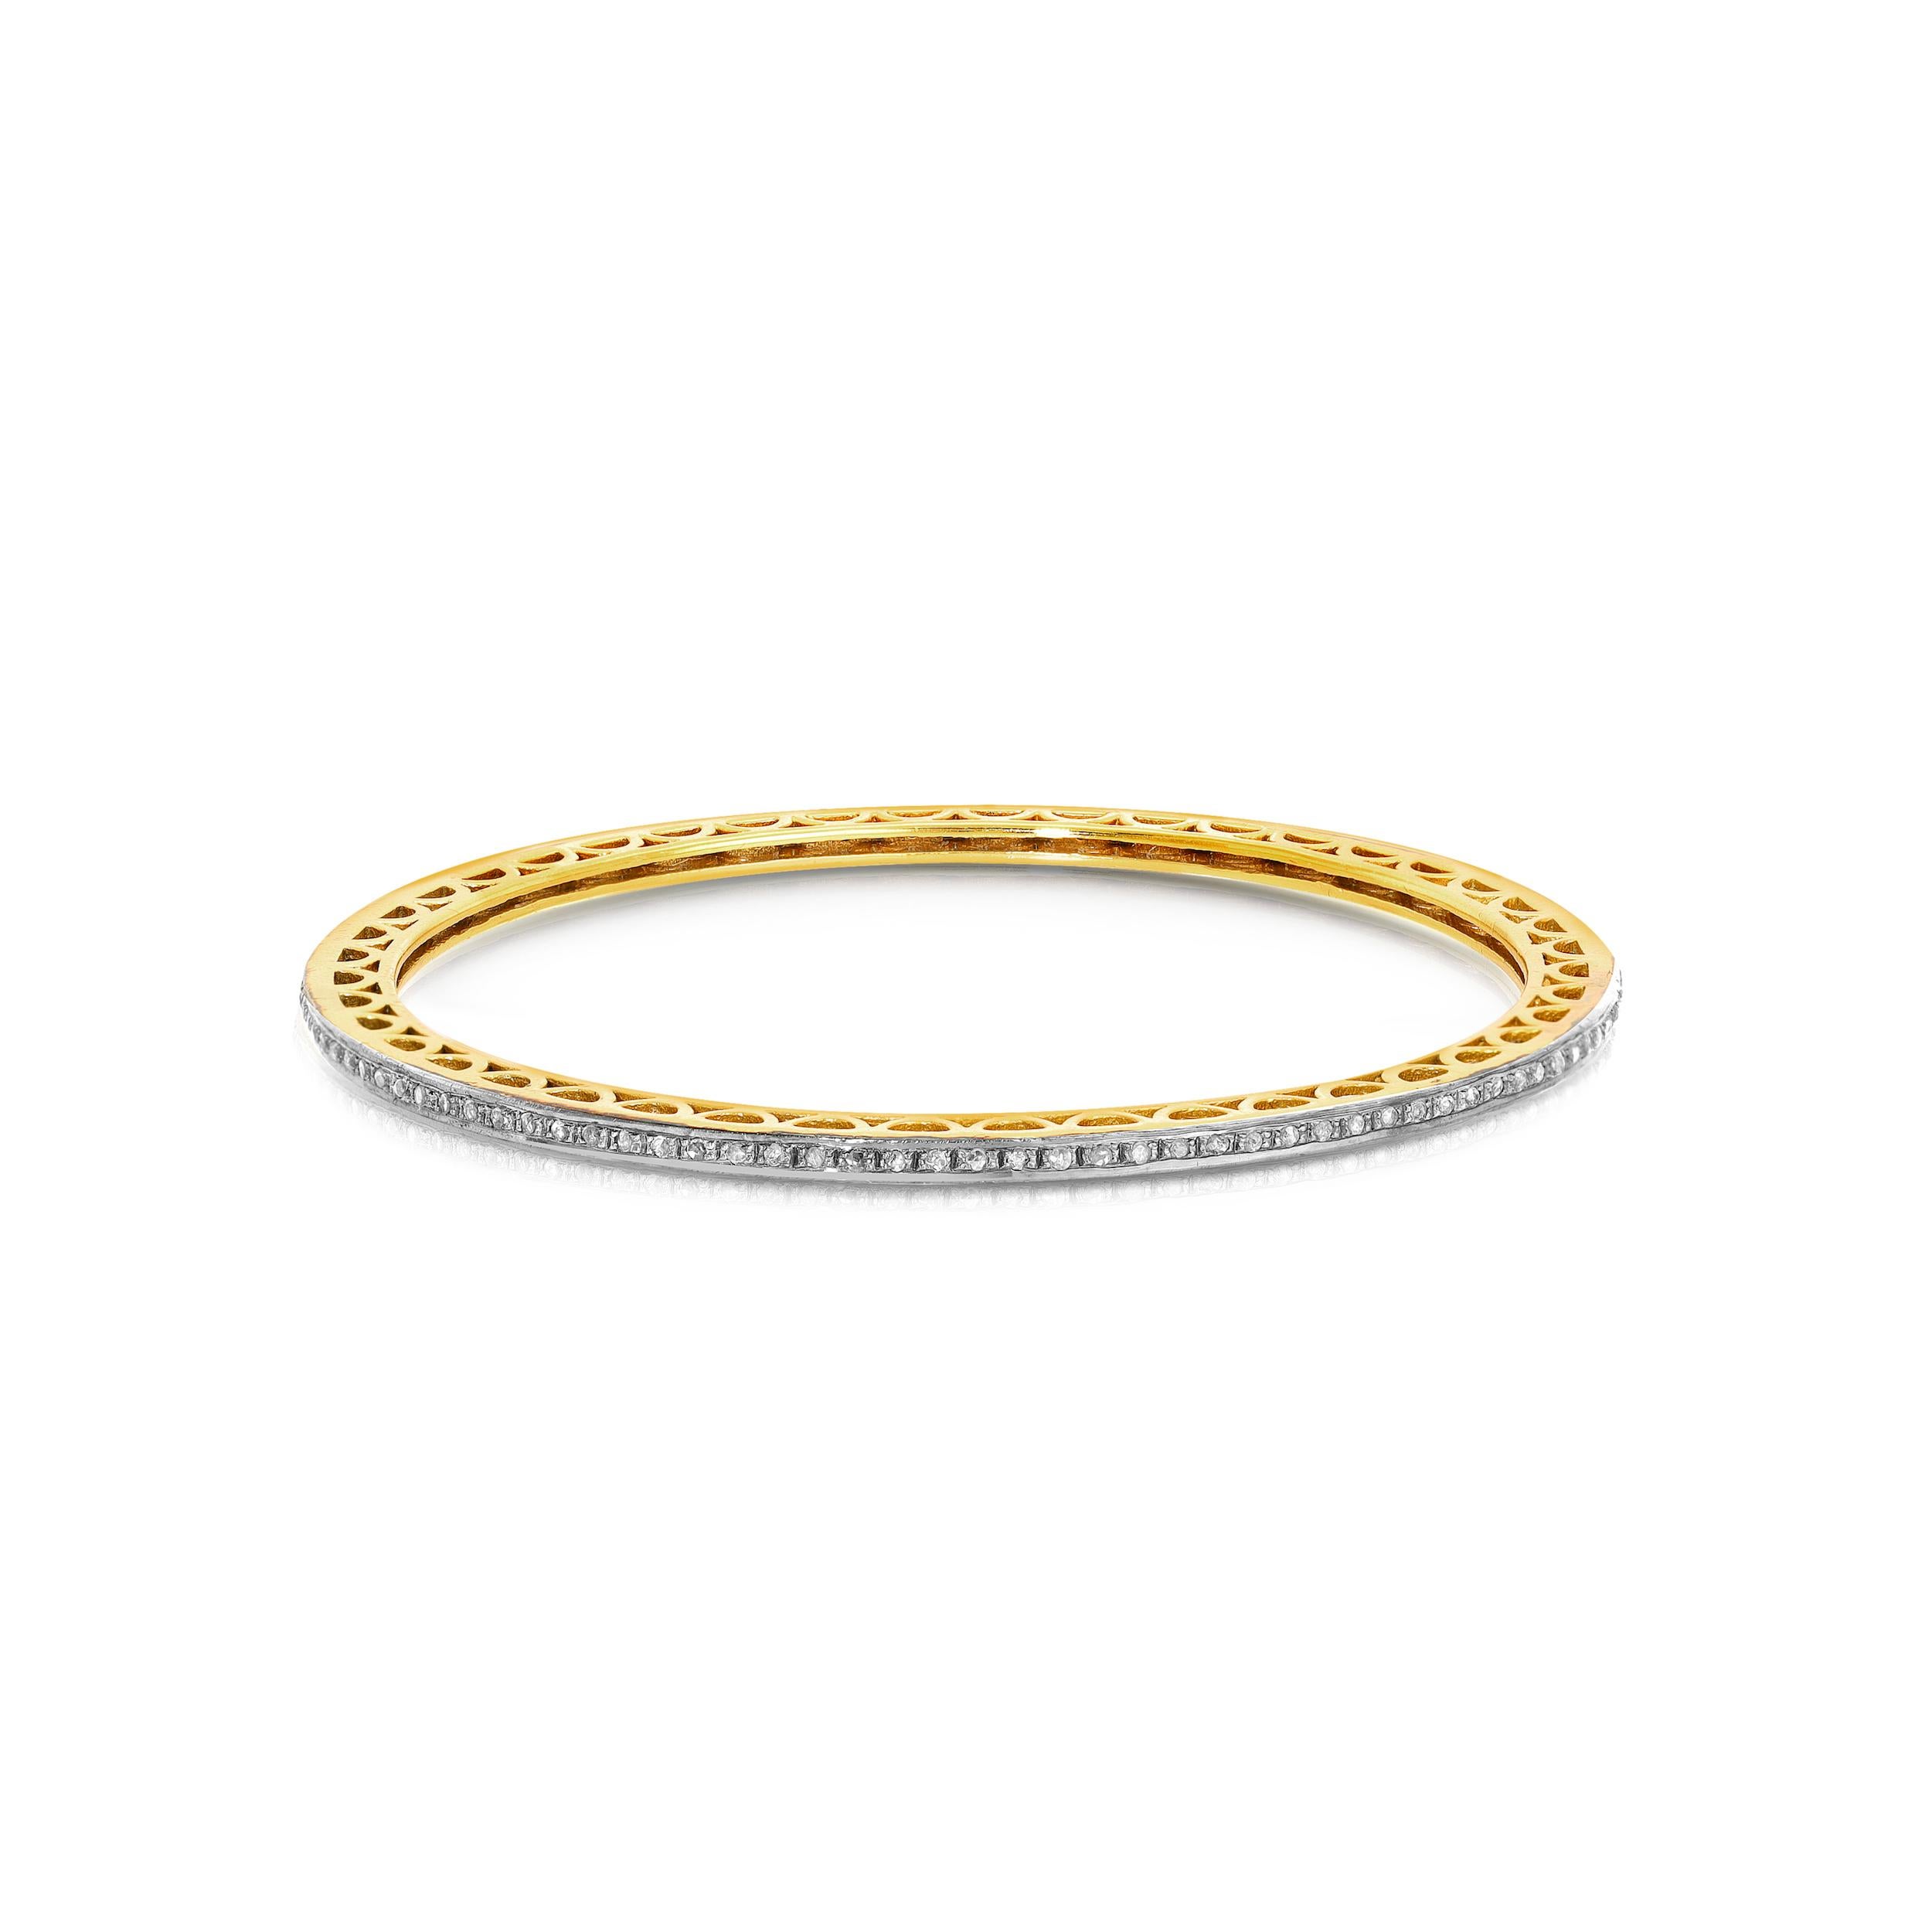 Un bangle entièrement serti de diamants avec .80 carats de diamants blancs sertis en argent noirci sur un bracelet contemporain en or 18 carats superposé à de l'argent ... Le nec plus ultra du glamour chic et élégant, seul ou en accompagnement